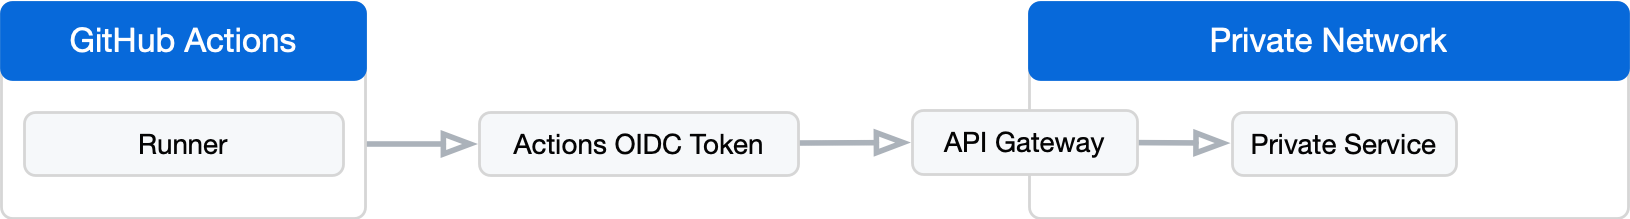 Diagramm einer OIDC-Gatewayarchitektur, die mit einem GitHub Actions-Runner beginnt und mit dem privaten Dienst eines privaten Netzwerks endet.